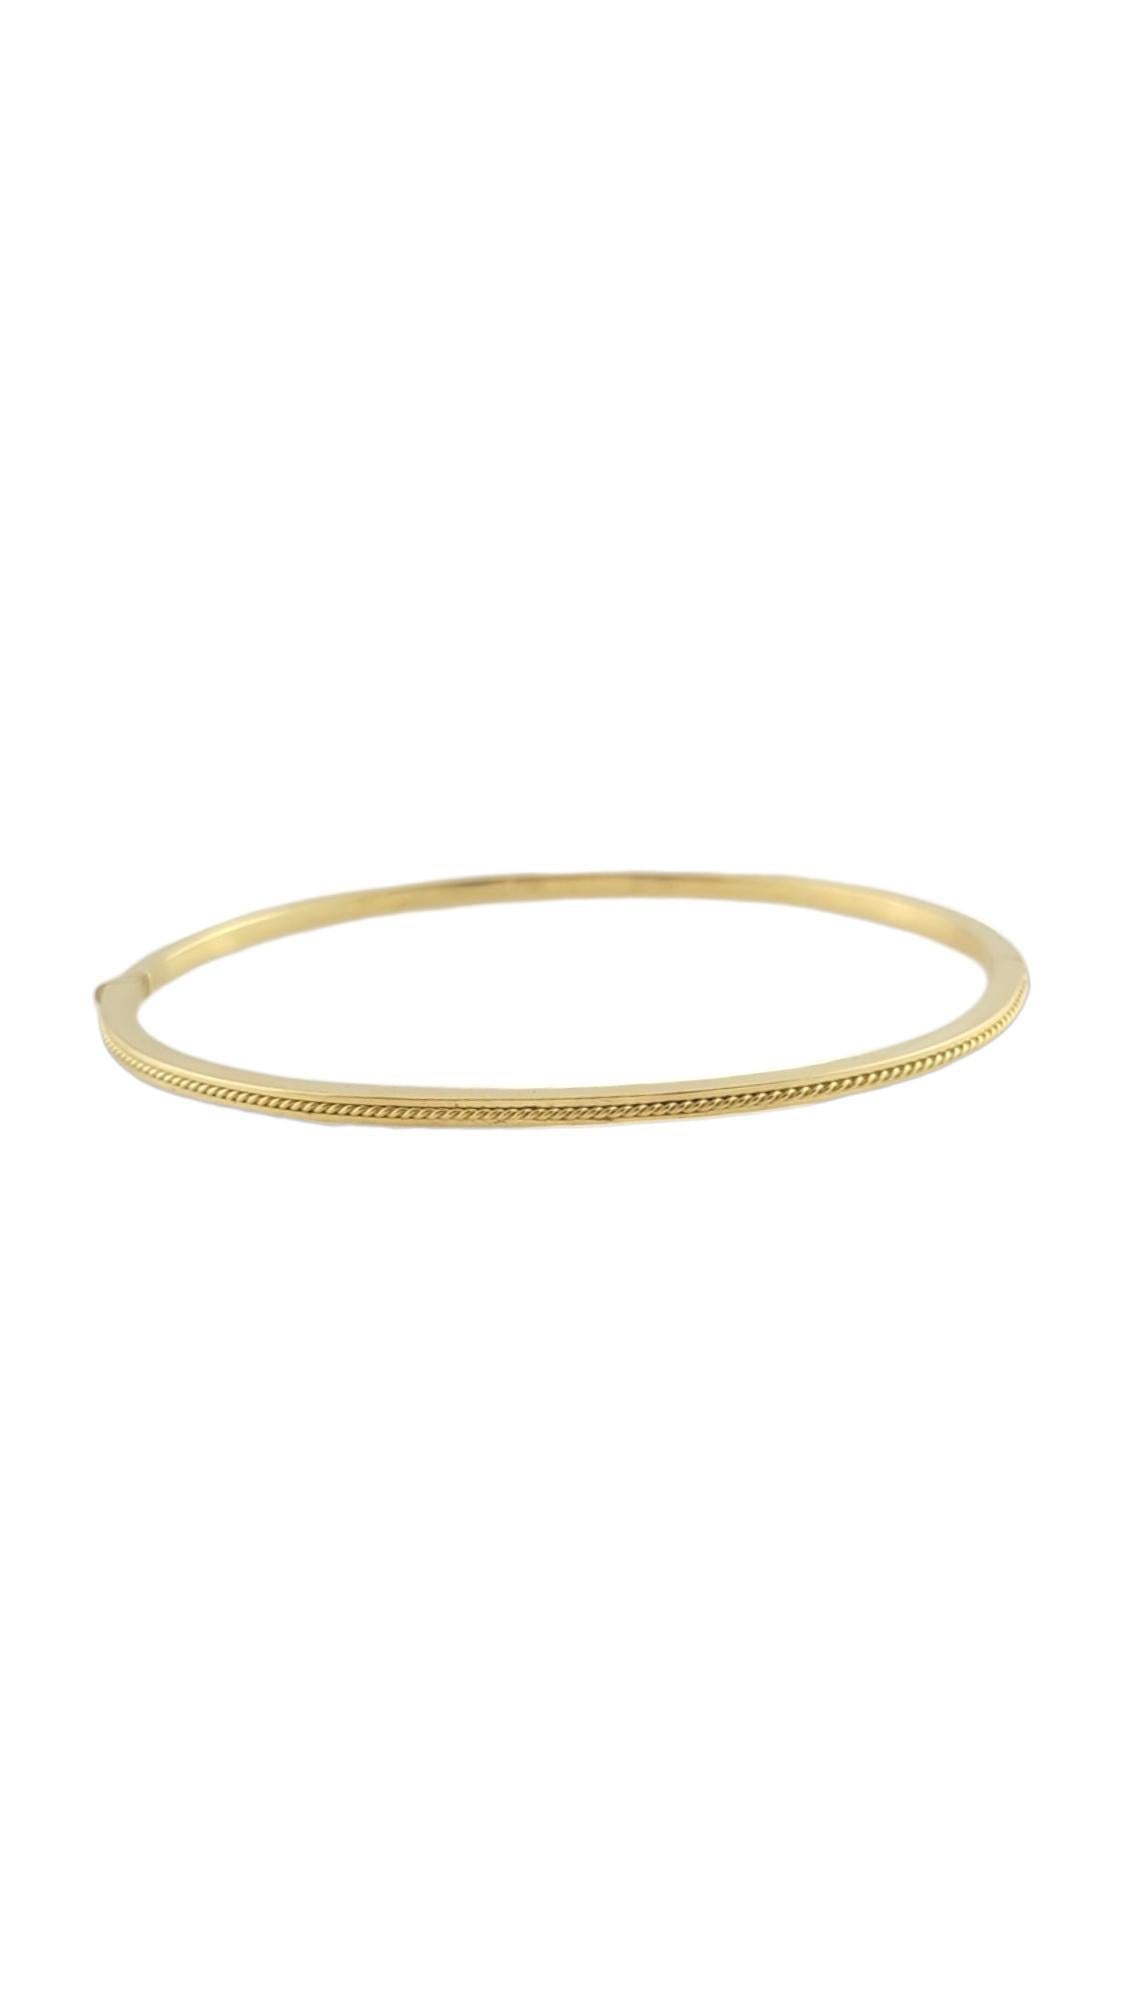 Hidalgo - Bracelet avec corde ovale en or 18 carats

Bracelet en or jaune 18 carats avec accent en forme de corde.

Poinçon : HIDALGO 750

Poids : 10 g/ 6,4 dwt.

Longueur de la chaîne : 6.5 in.

1,8 mm d'épaisseur.

Très bon état, polissage